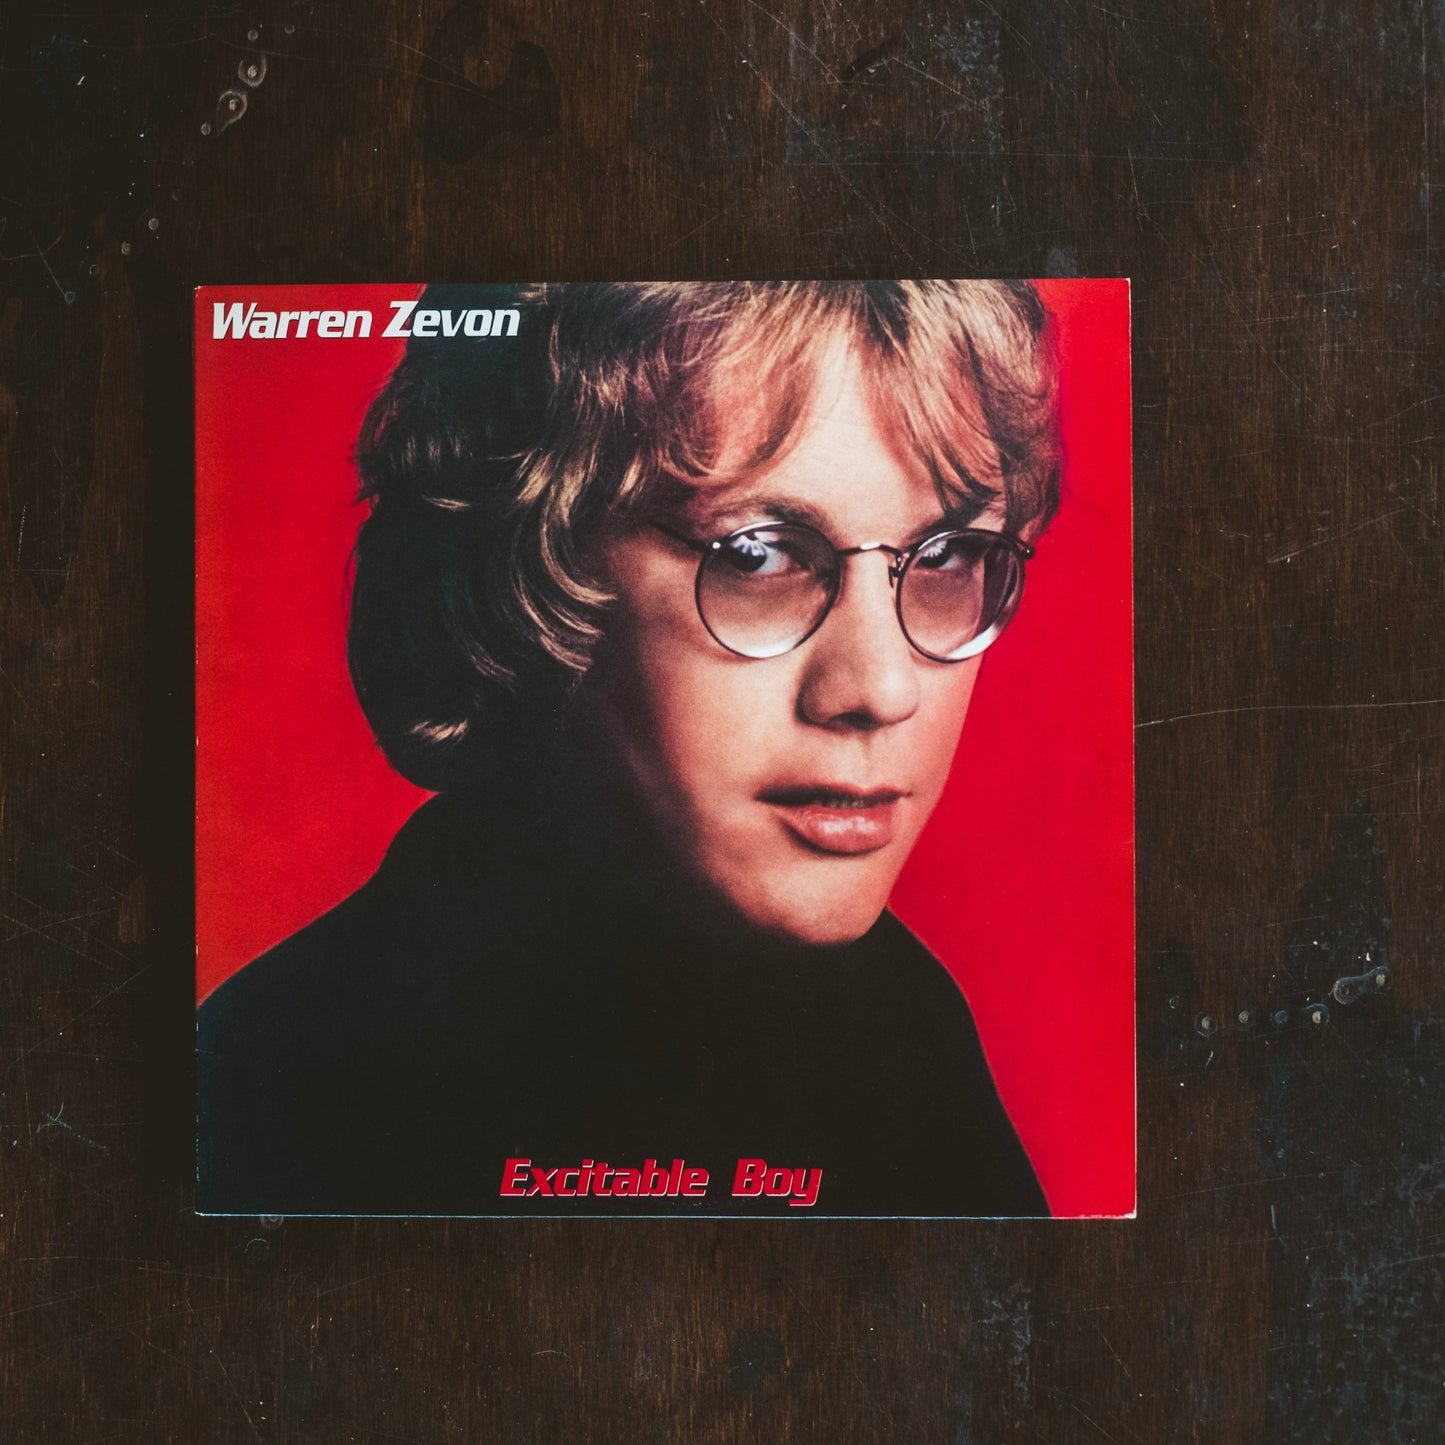 Zevon, Warren - Excitable Boy (Pre-Loved) - NM - Zevon, Warren - Excitable Boy - LP's - Yellow Racket Records